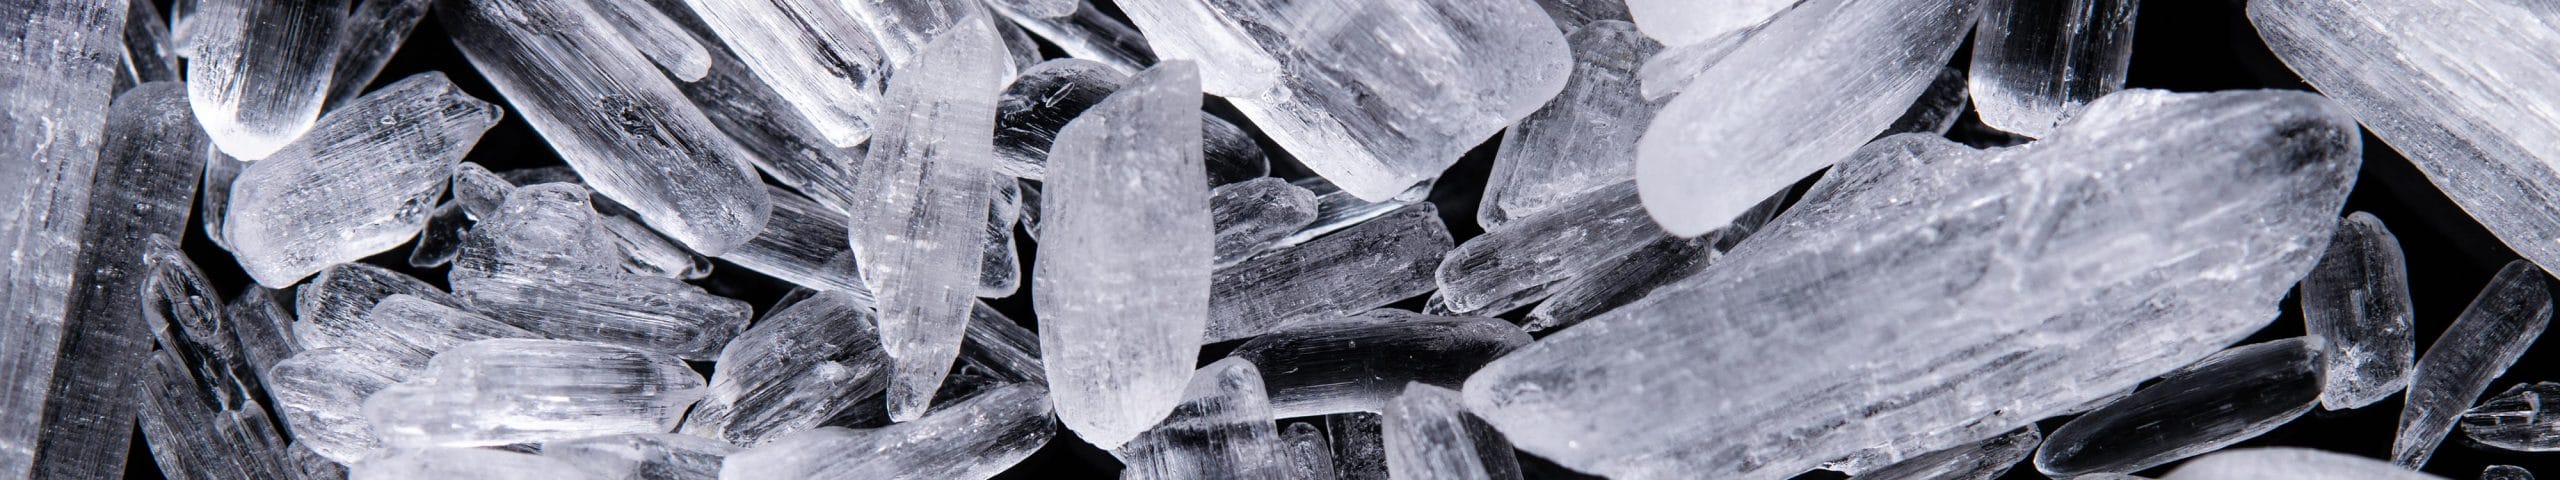 iodine crystals meth